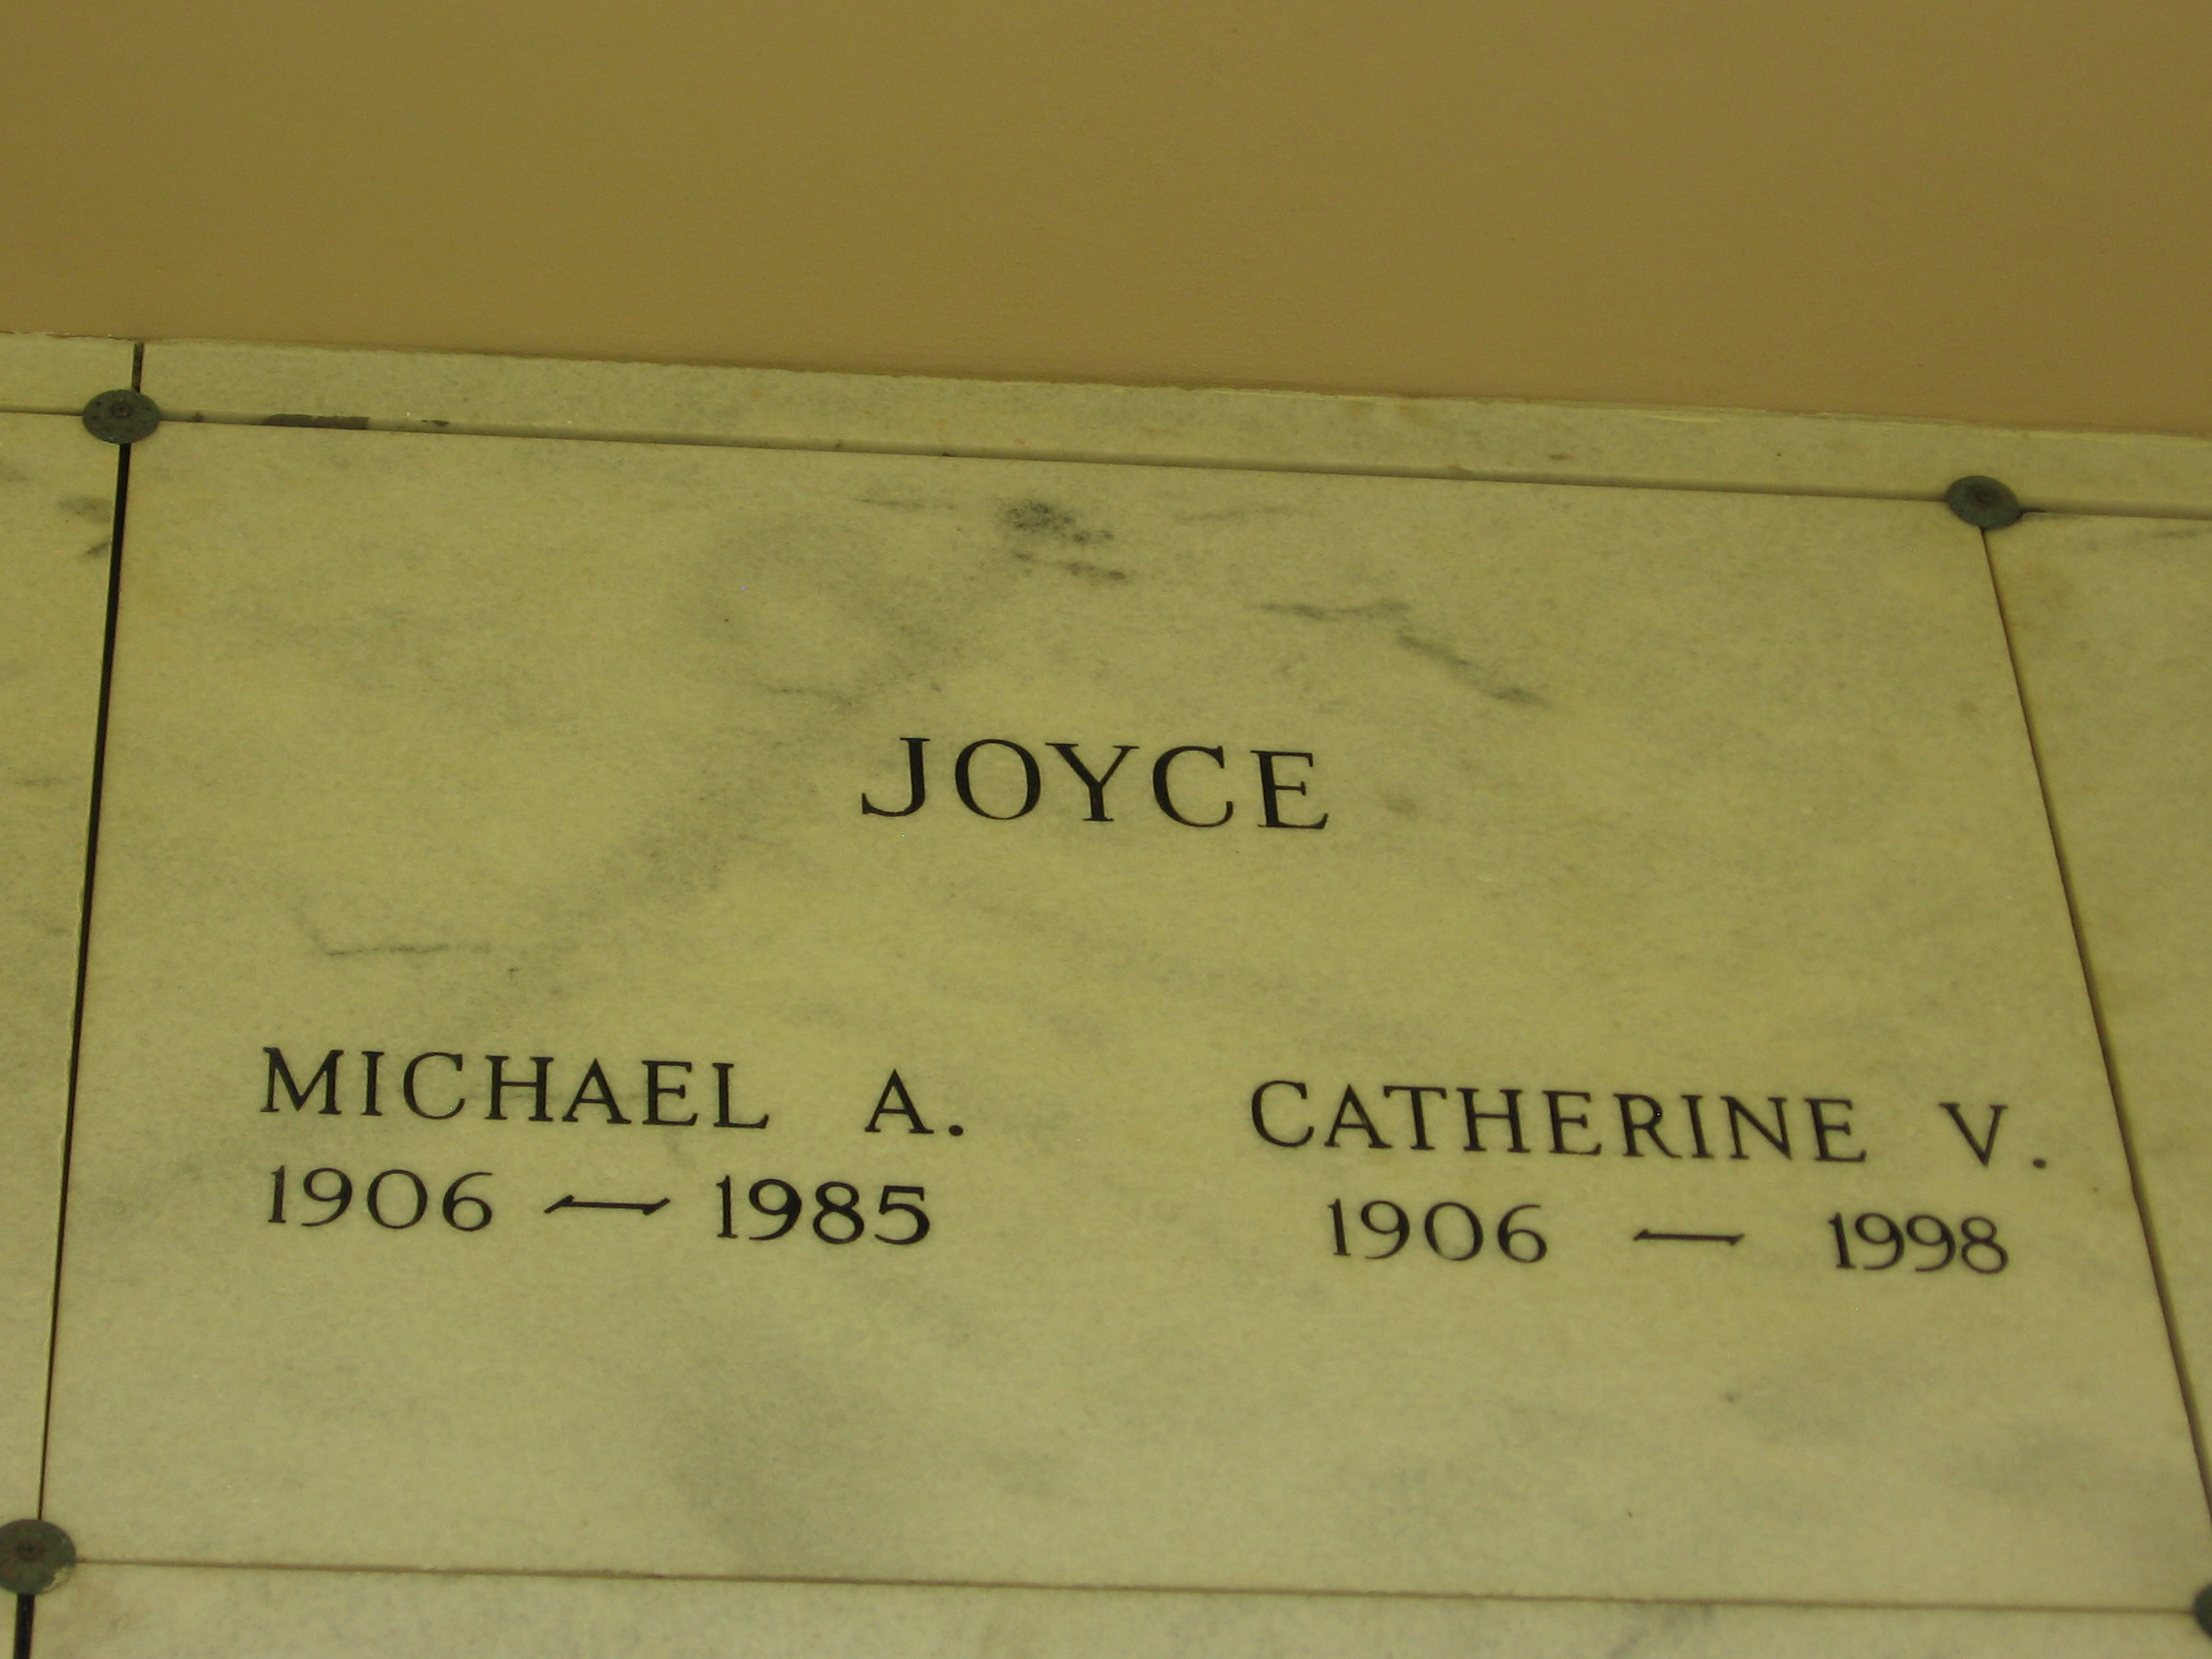 Catherine V Joyce